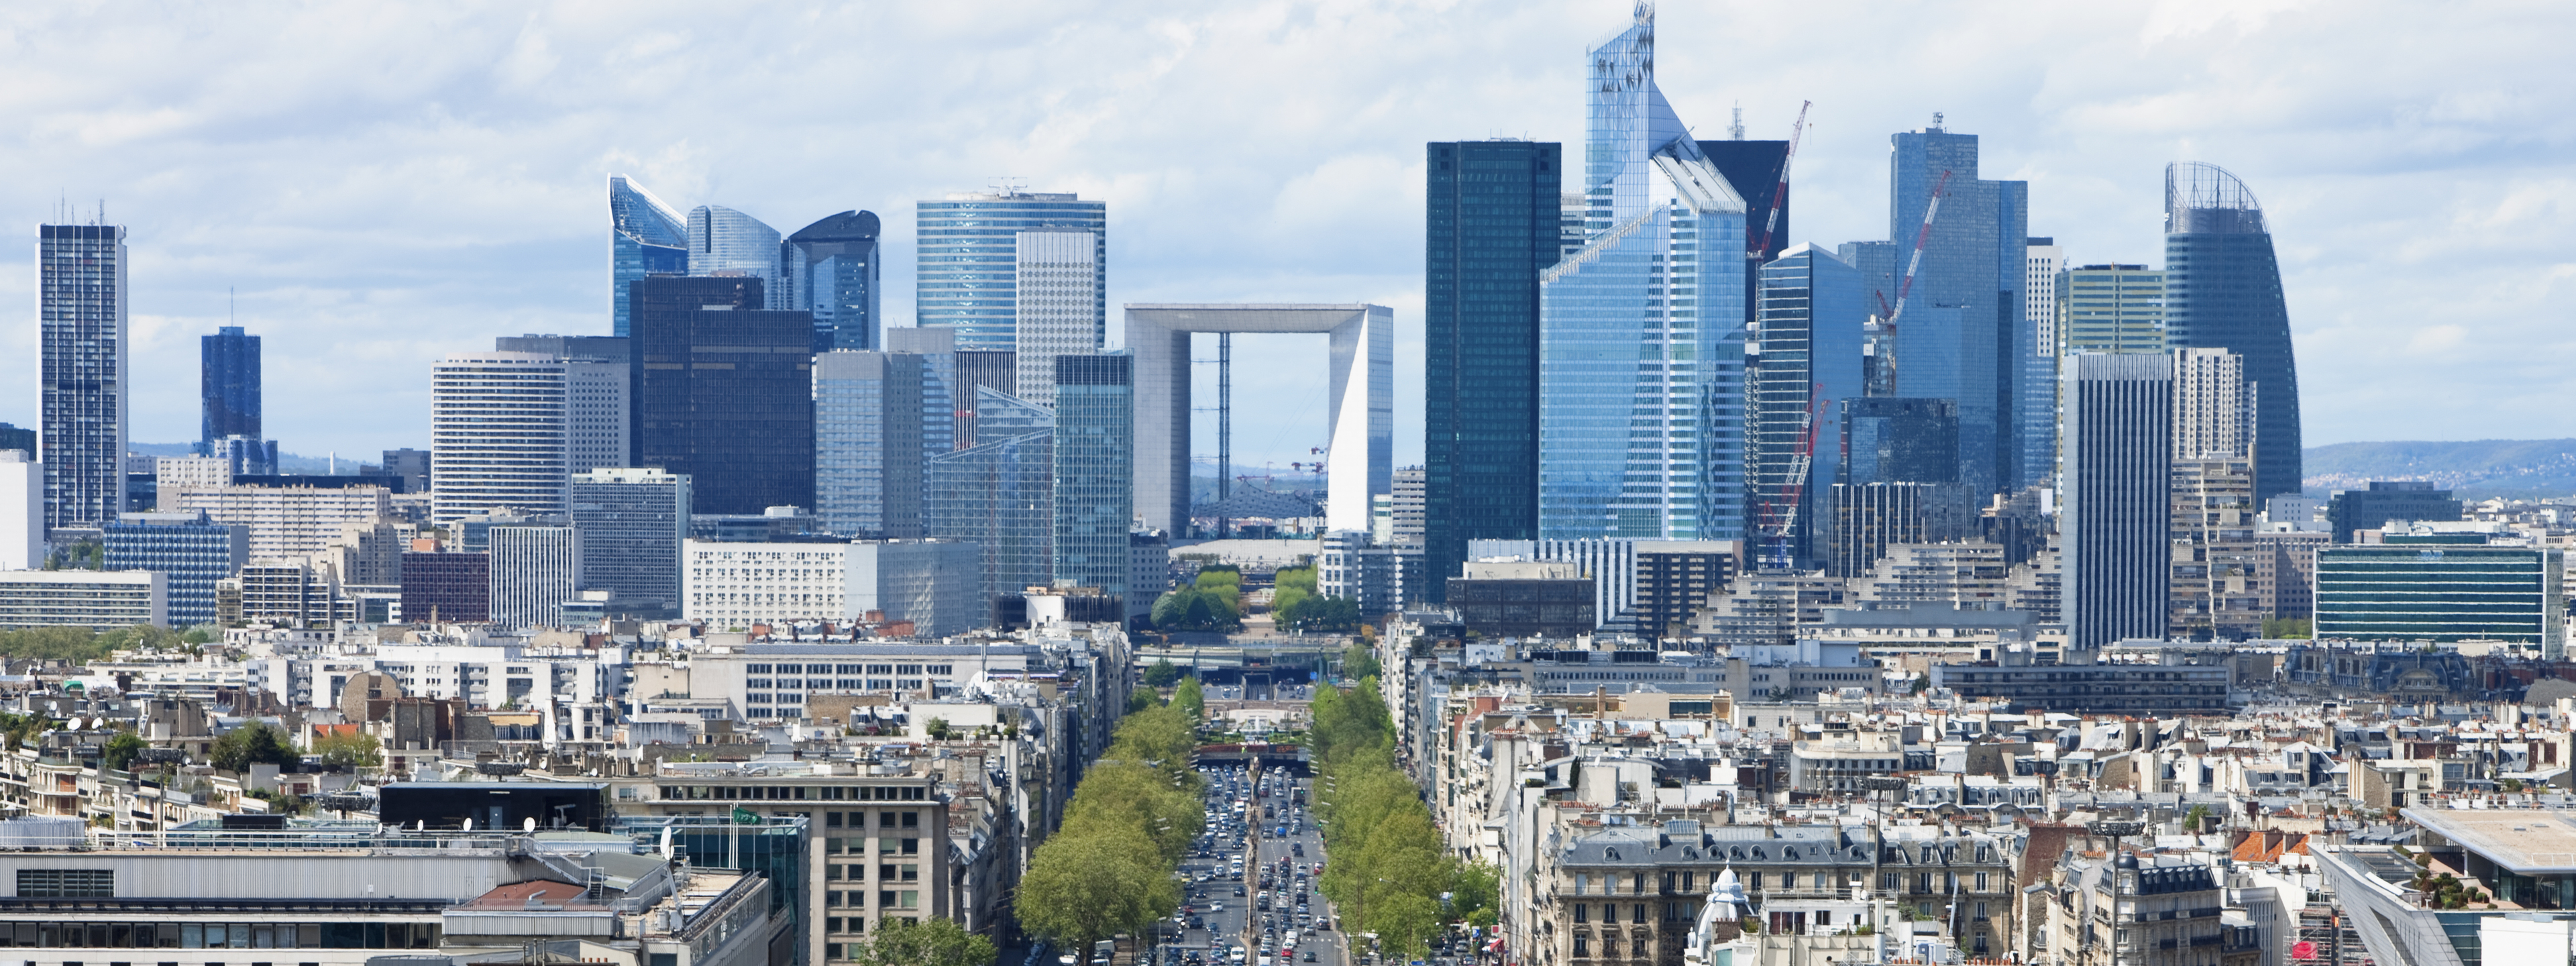 Paris City View Towards La Defense Financial District.